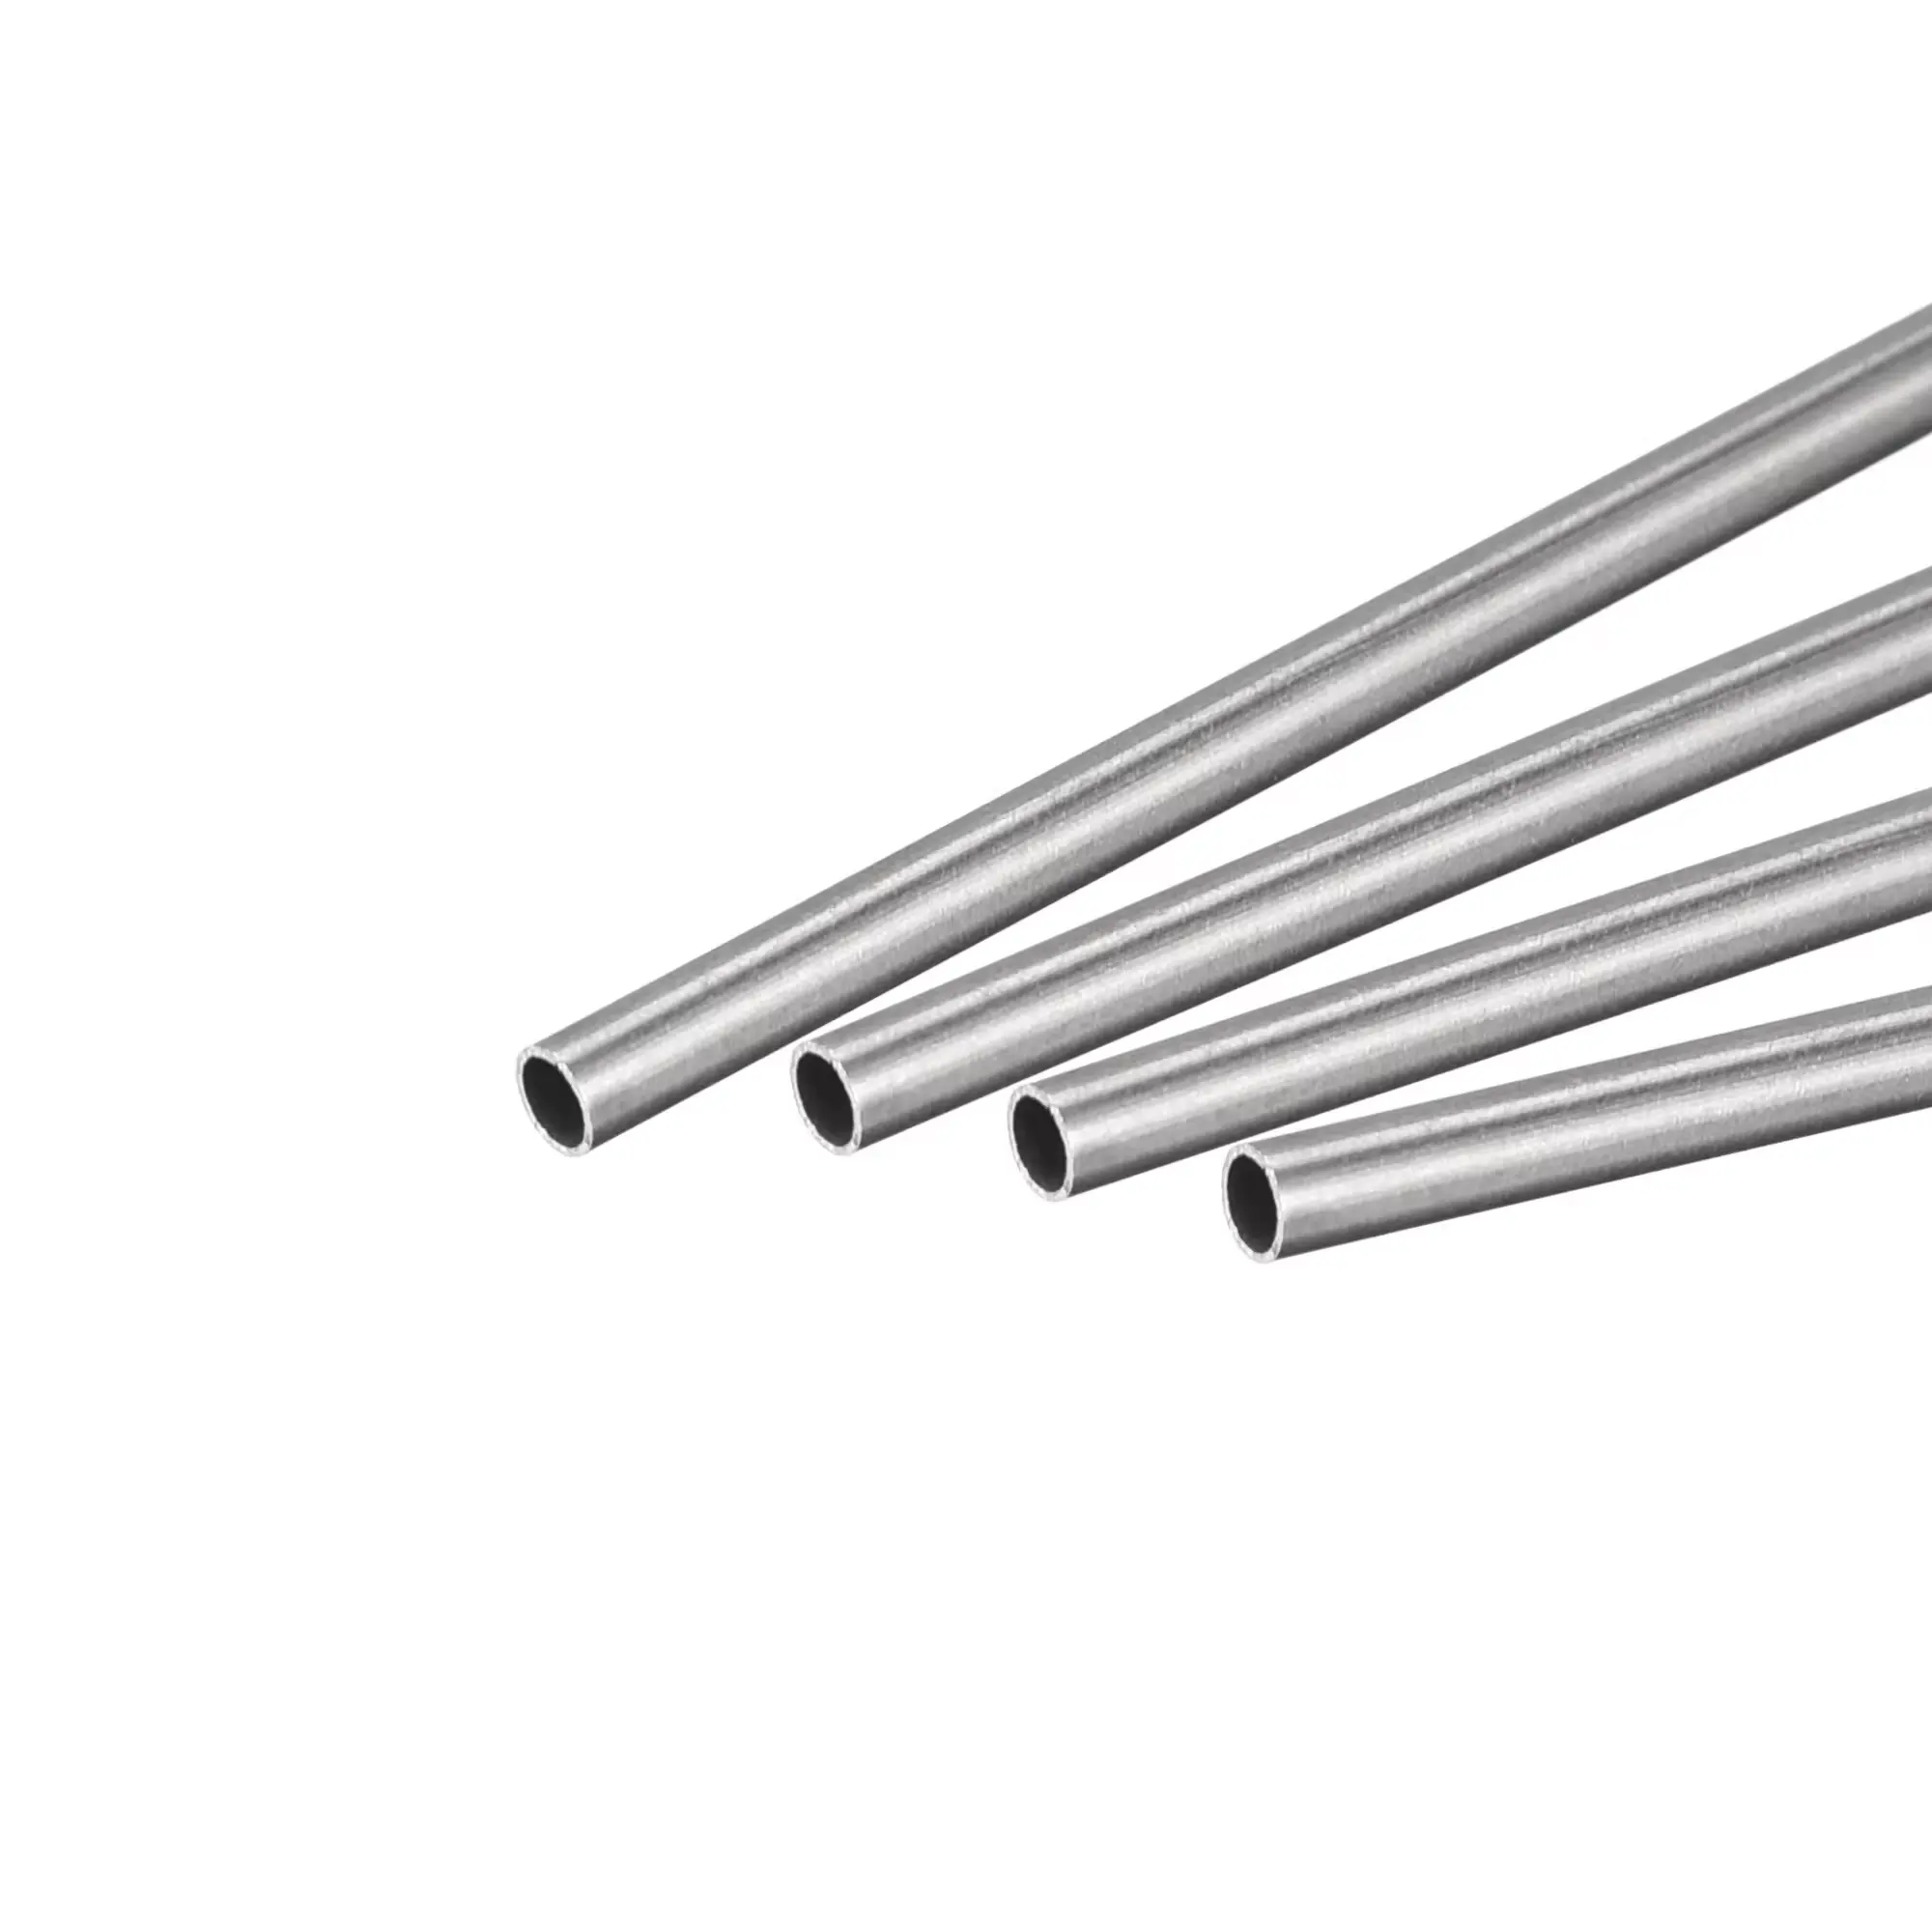 Tubos de acero de alta calidad SS 304 316 310 tubo de aguja de acero inoxidable médico tubo capilar adecuado